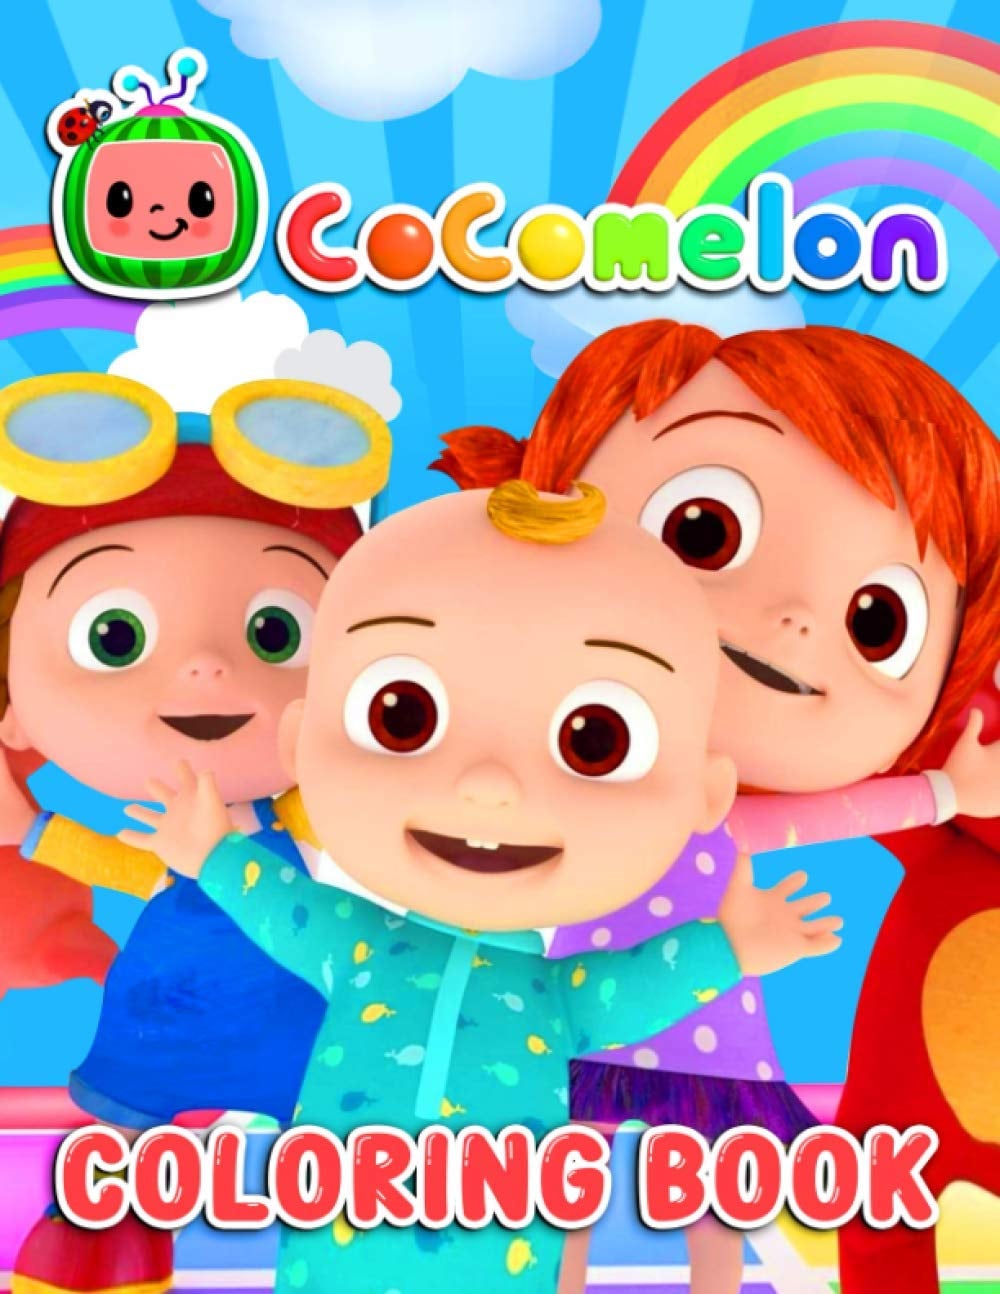 Cocomelon ABC Fun Colouring Activity Book